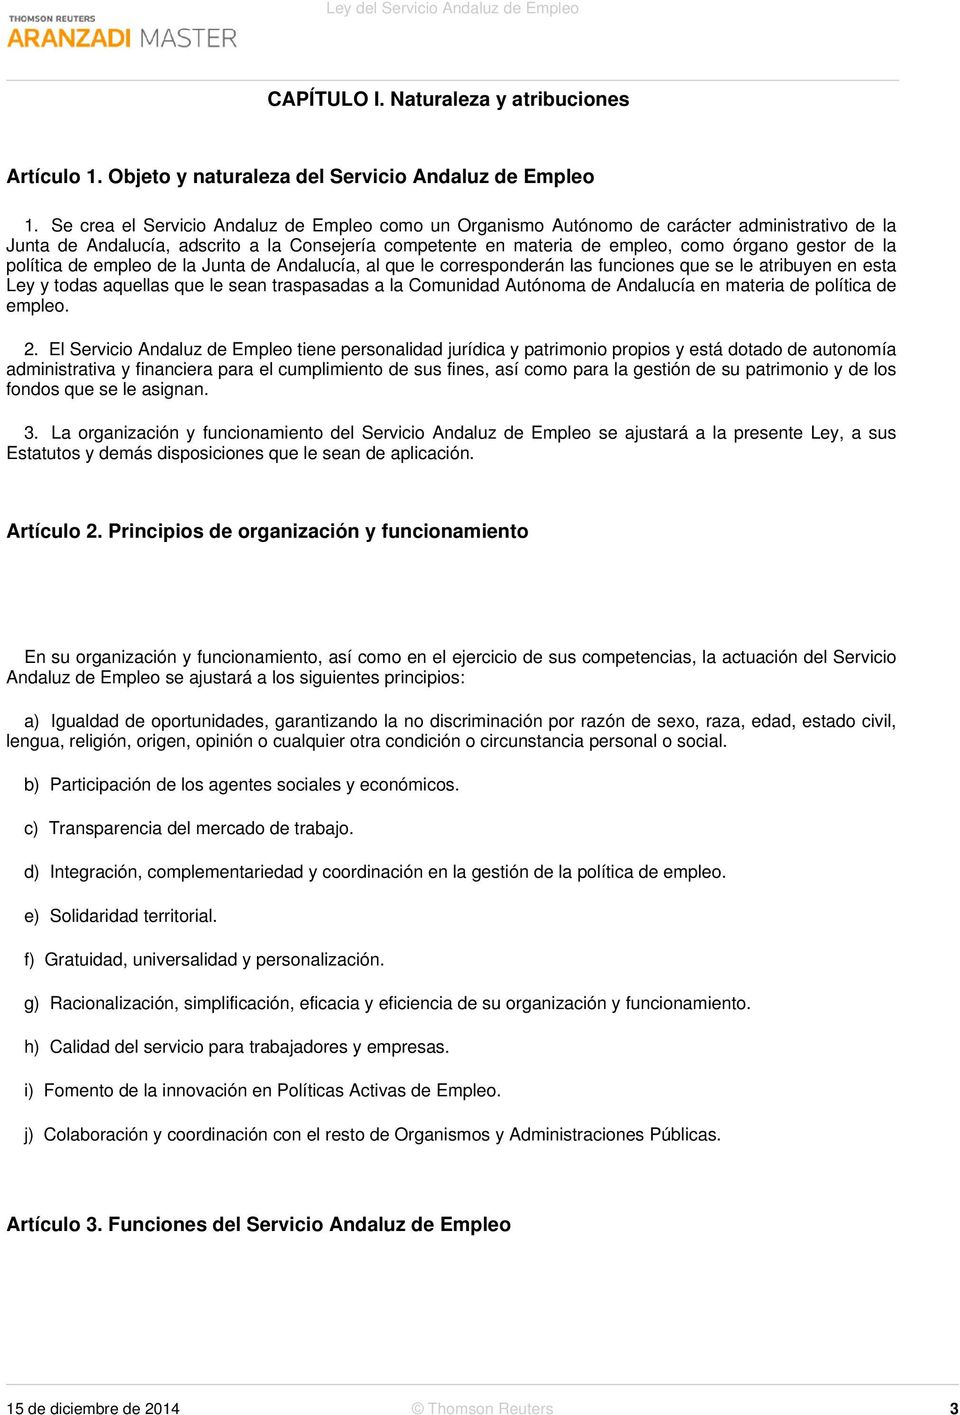 la política de empleo de la Junta de Andalucía, al que le corresponderán las funciones que se le atribuyen en esta Ley y todas aquellas que le sean traspasadas a la Comunidad Autónoma de Andalucía en